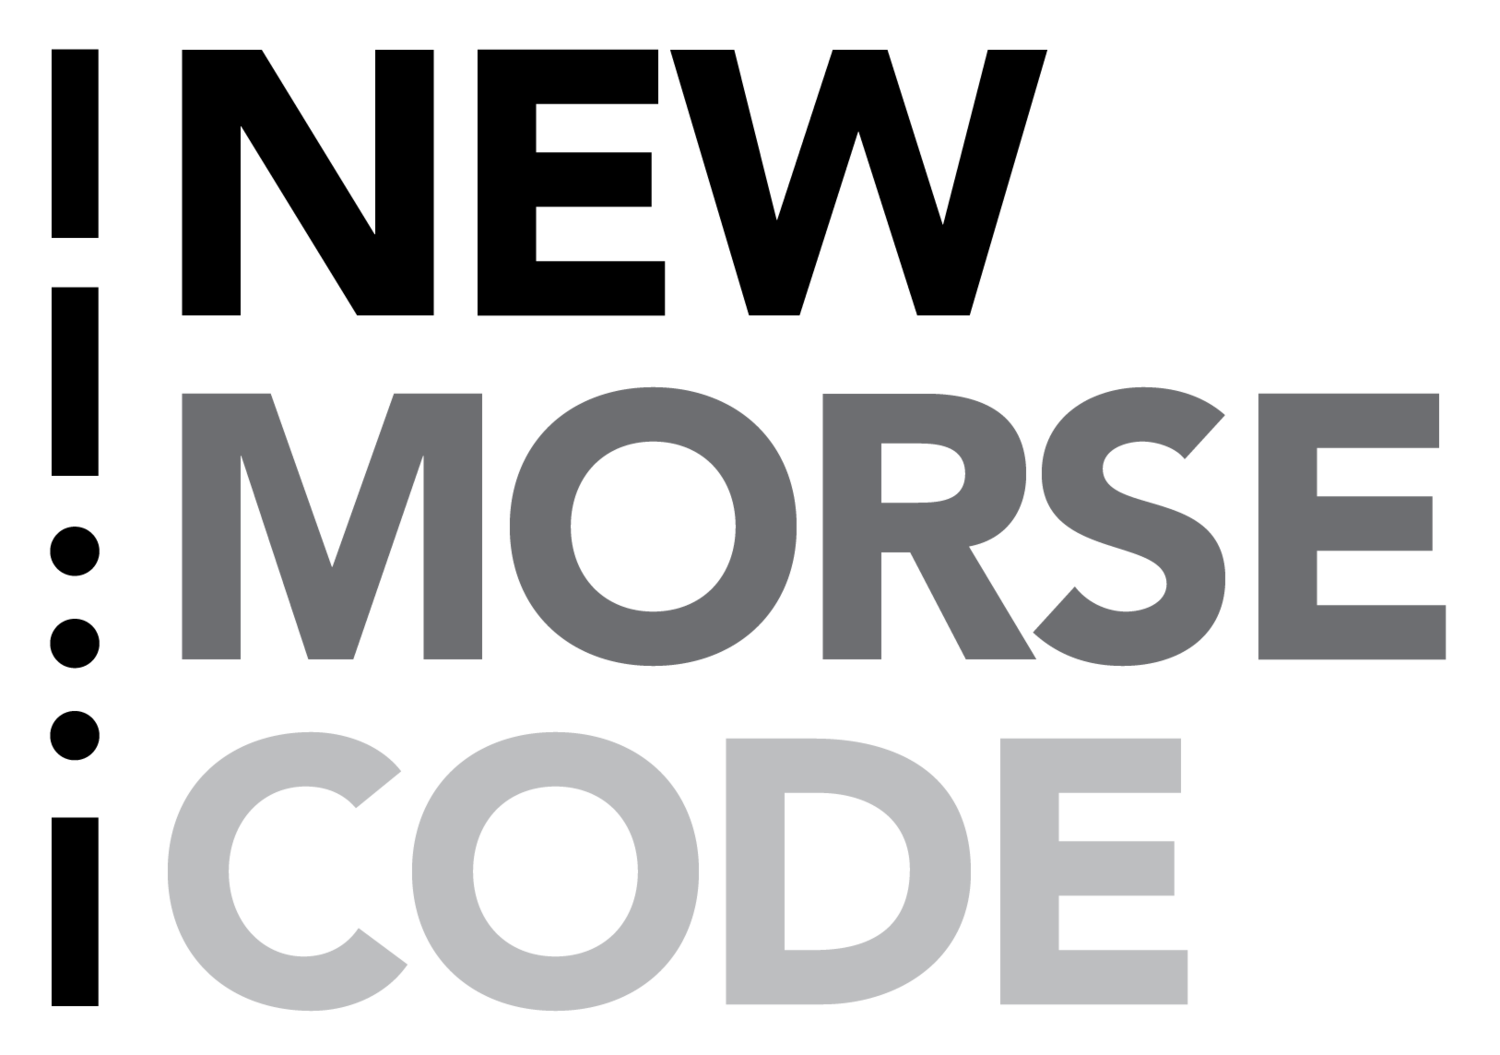 Zweites Beispiel Logo mit Morse-Code Nutzung